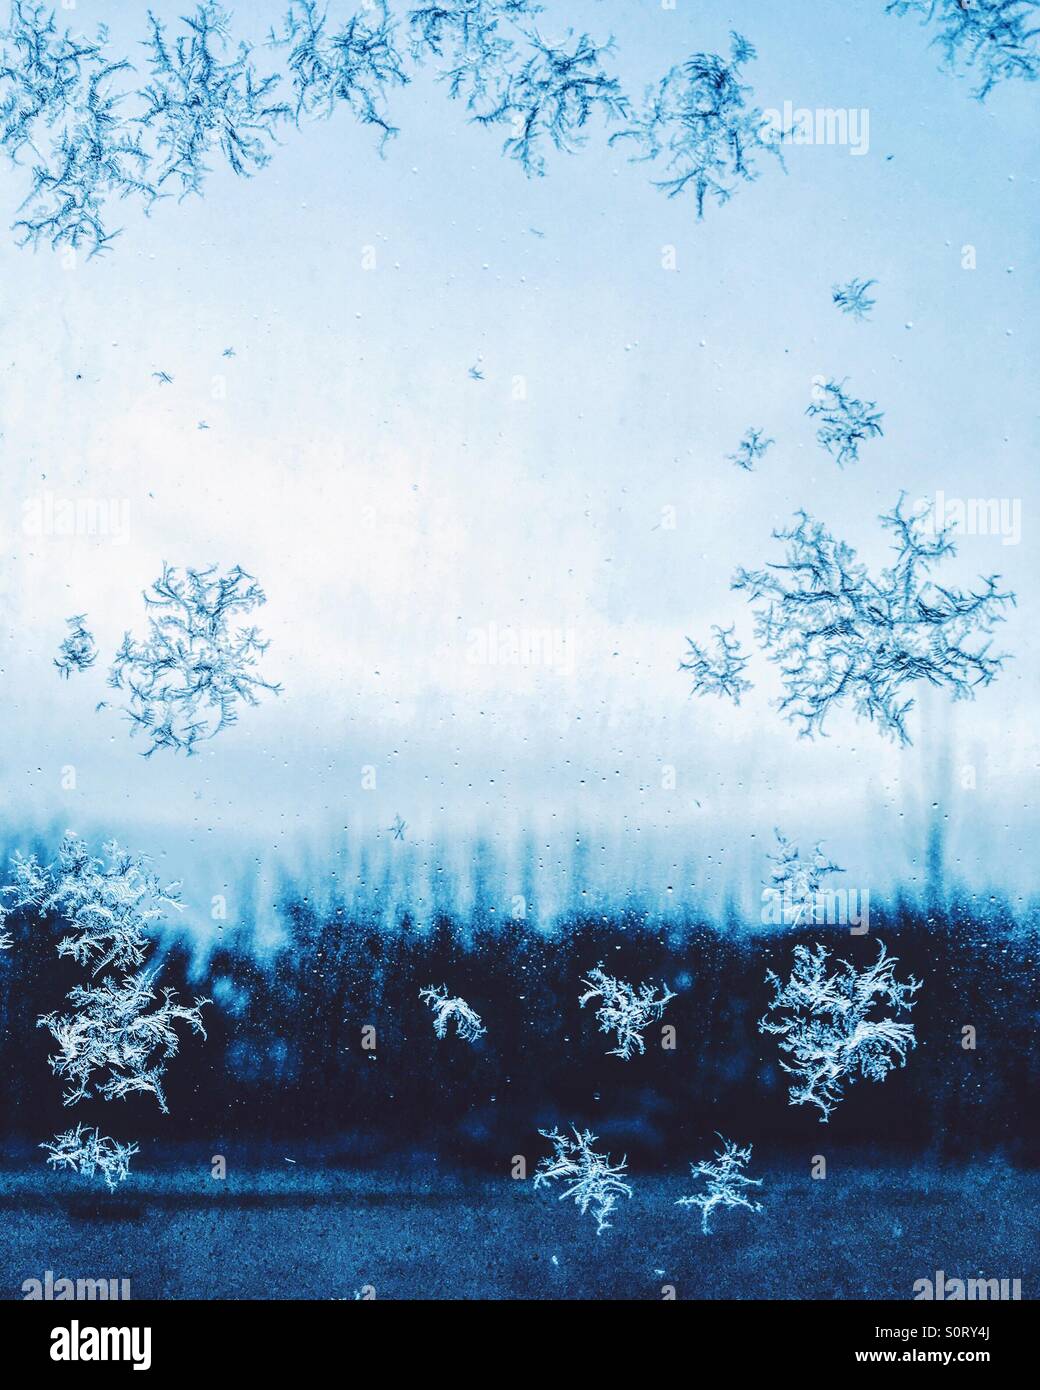 Frozen snowflakes Stock Photo